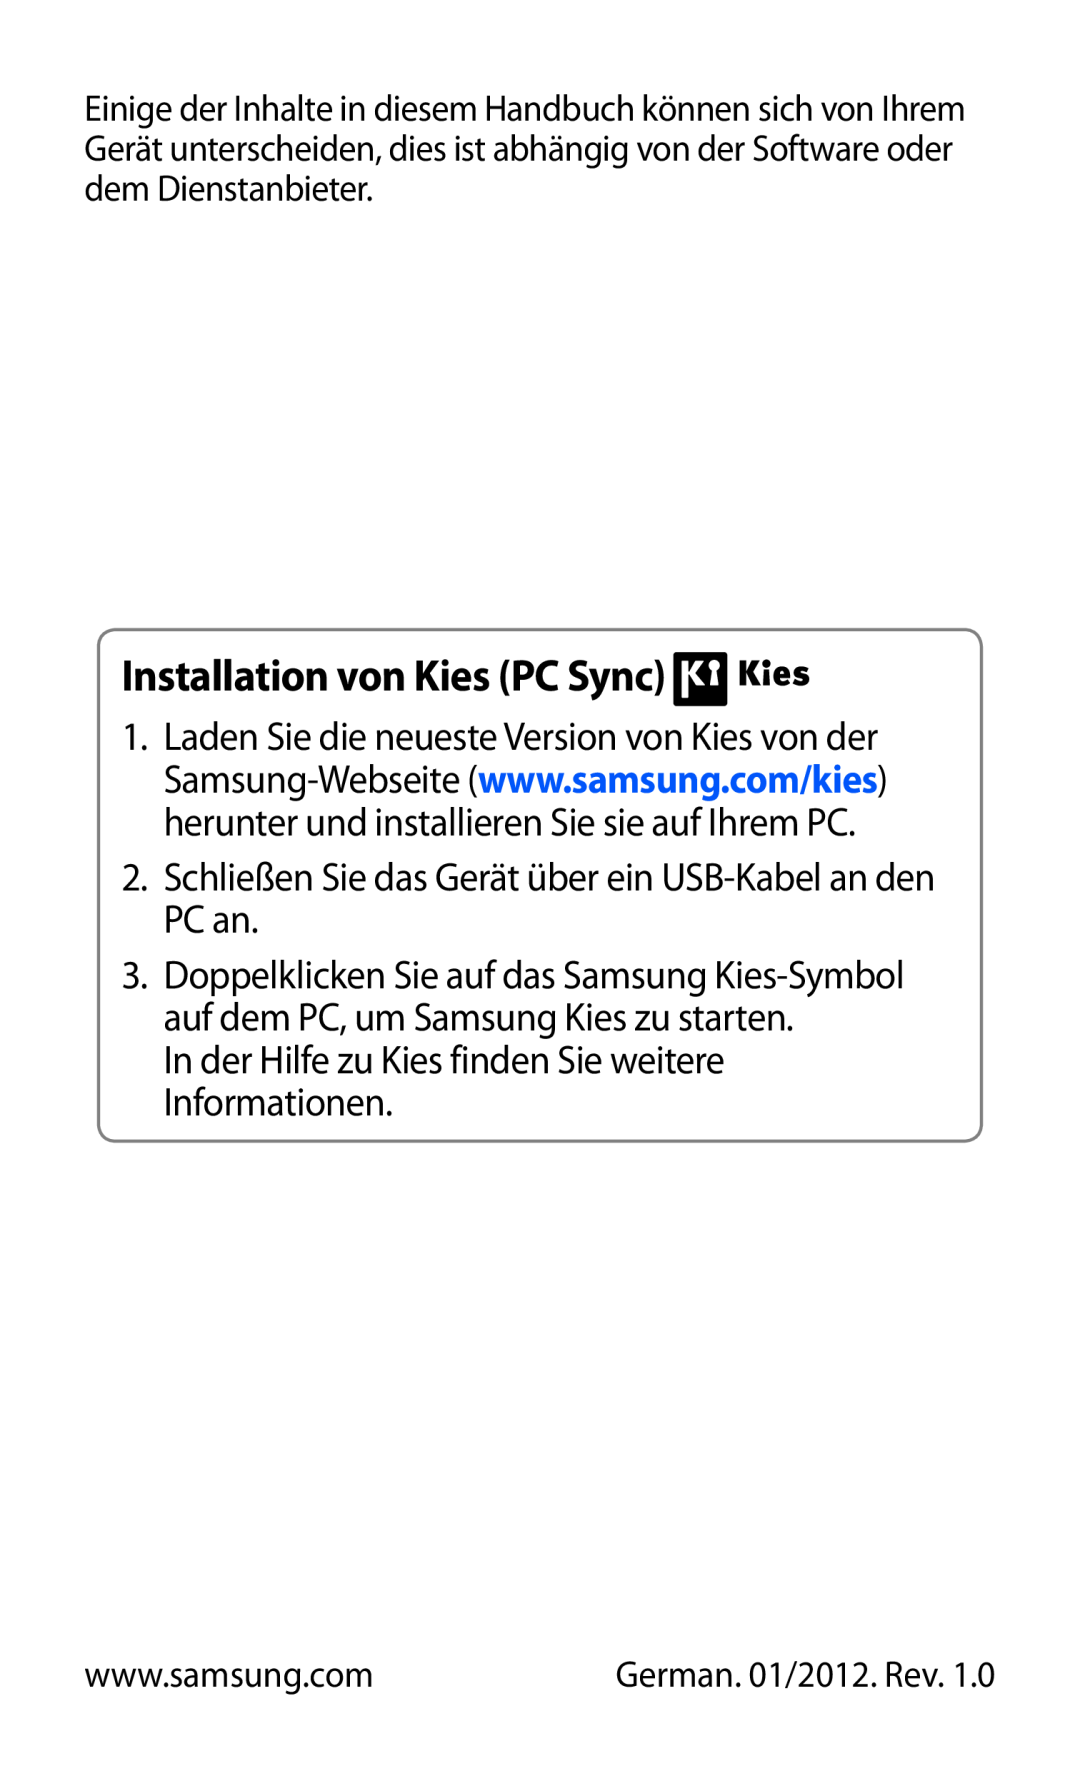 Samsung GT-S8600HKATUR manual Installation von Kies PC Sync, Schließen Sie das Gerät über ein USB-Kabel an den PC an 